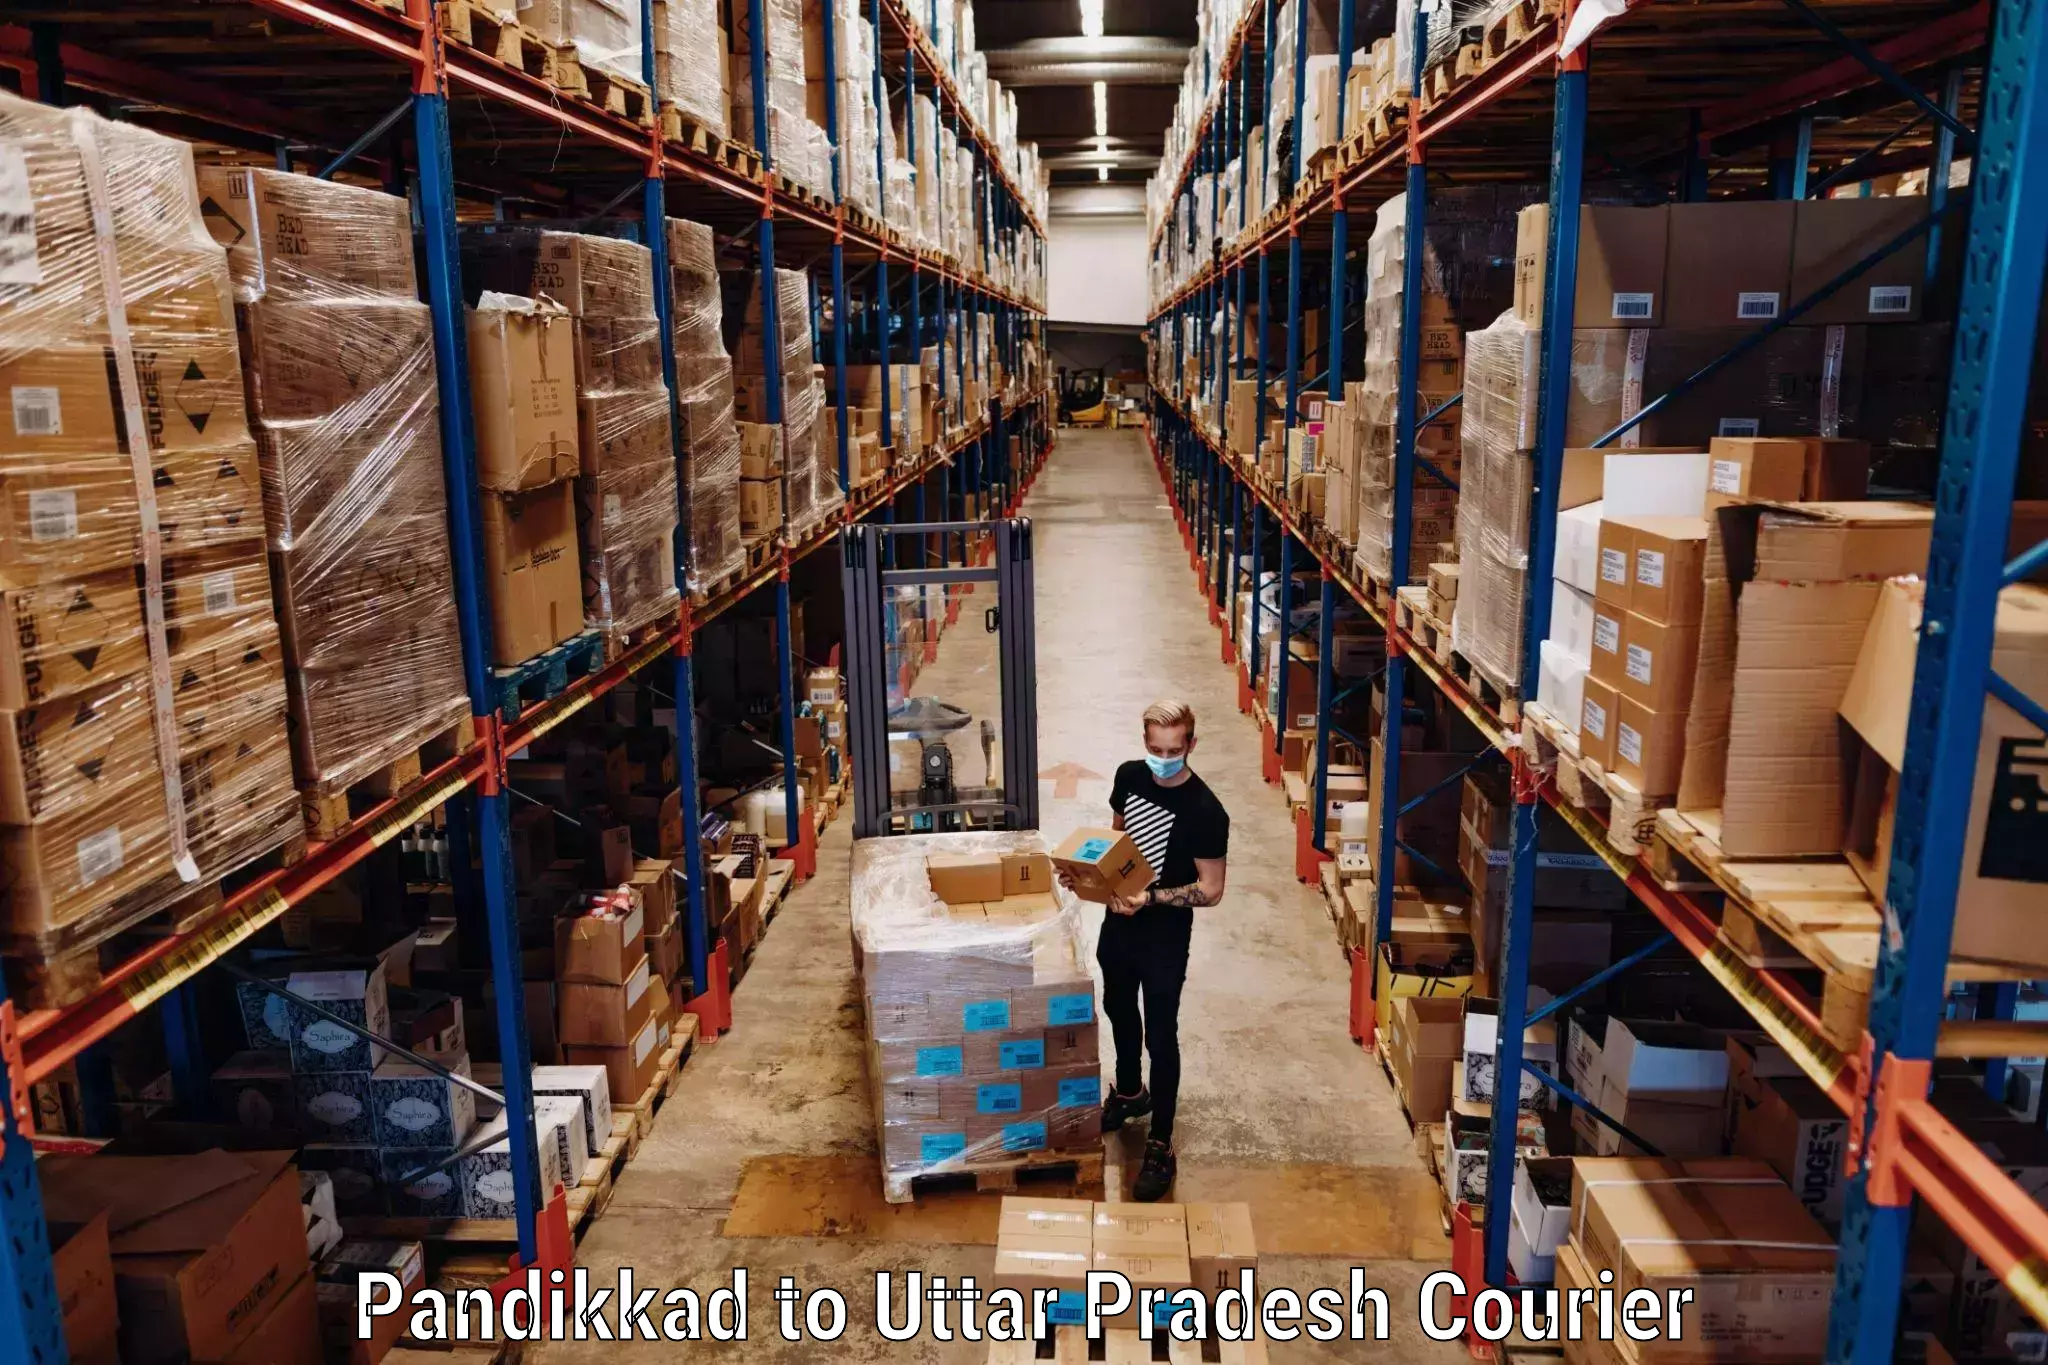 Hassle-free luggage shipping Pandikkad to Mehnagar